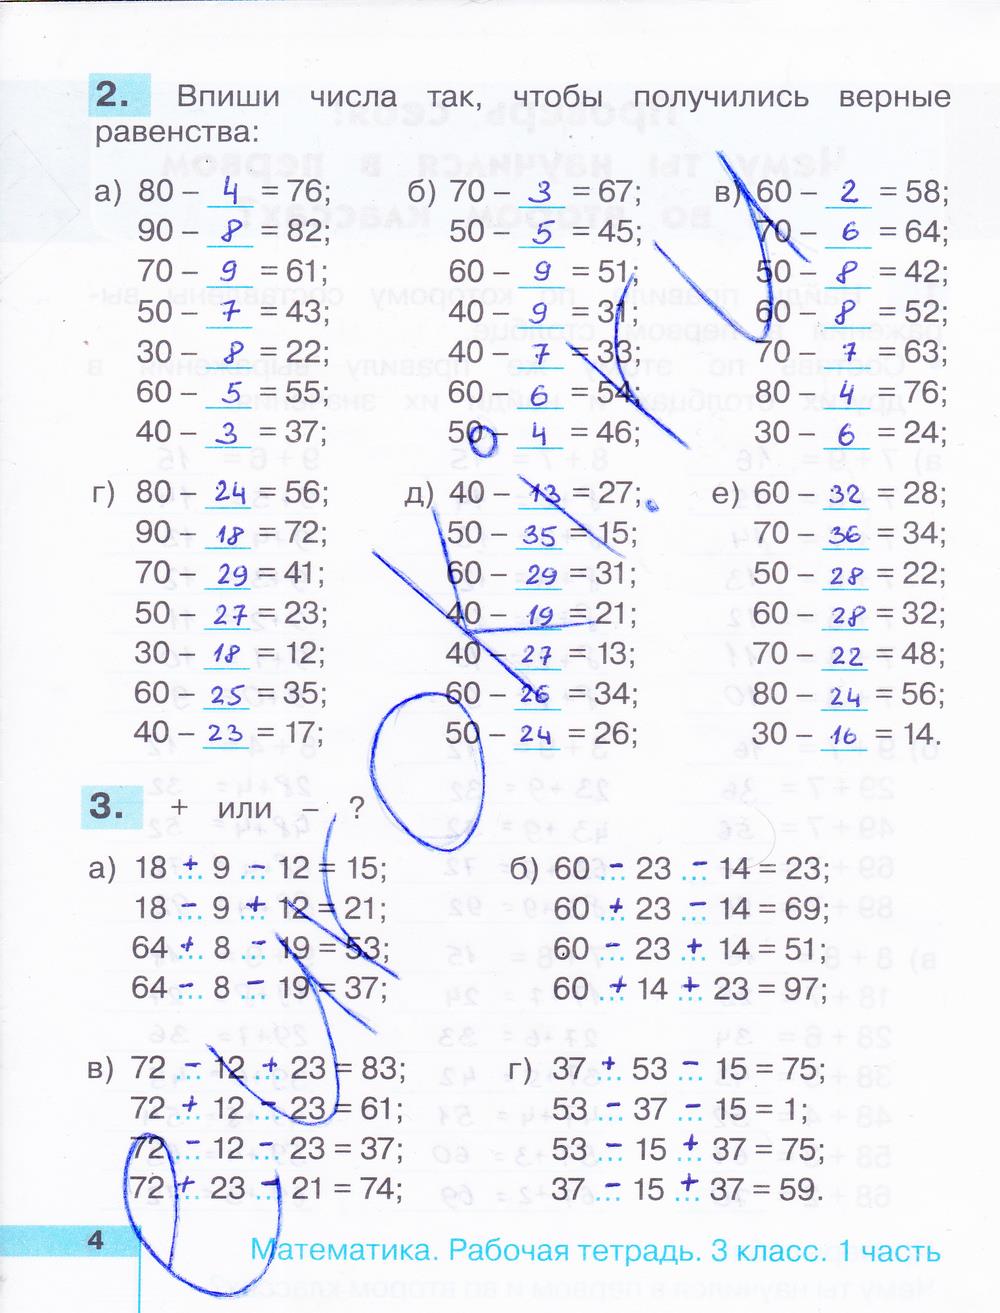 гдз 3 класс рабочая тетрадь часть 1 страница 4 математика Истомина, Редько